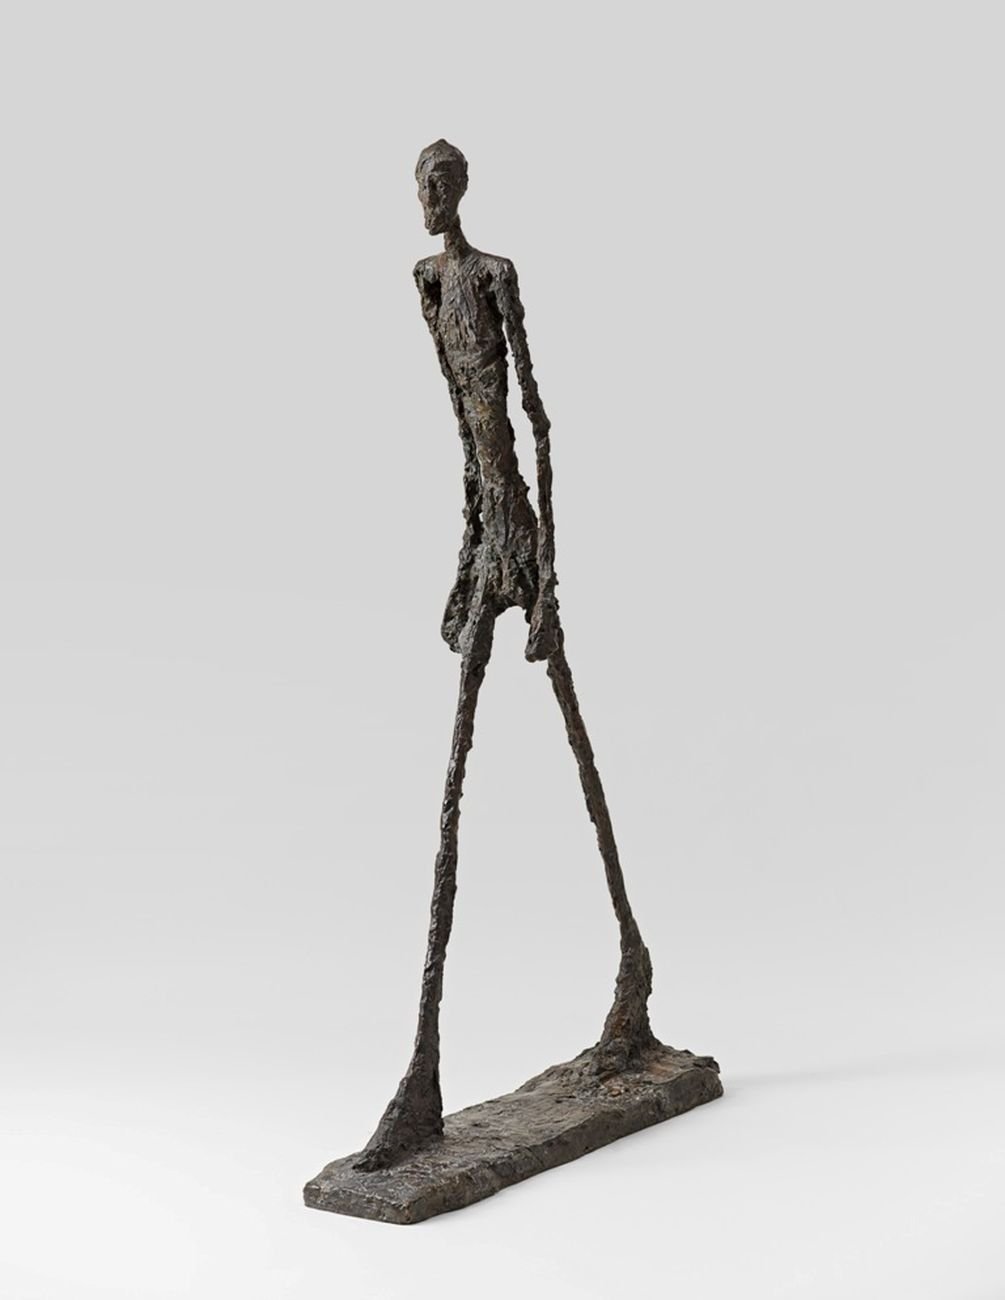 Alberto Giacometti, Uomo che cammina, 1960. Basilea, Fondation Beyeler © Alberto Giacometti Estate